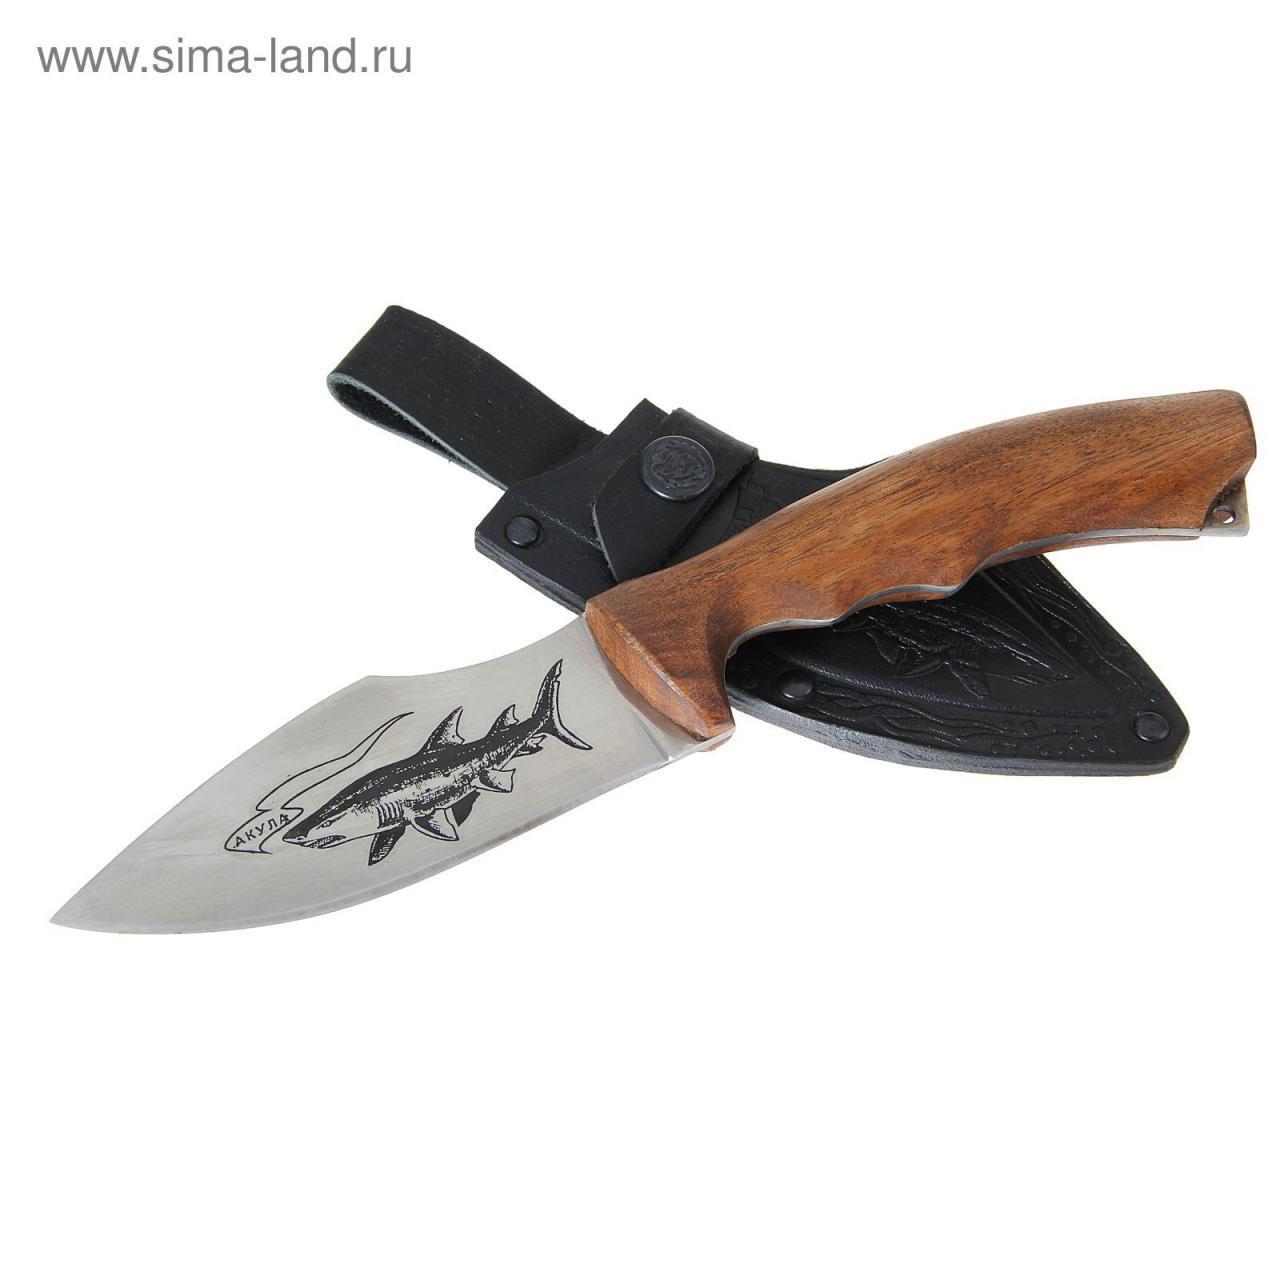 Нож «Акула», рукоять-дерево, сталь 65х13 (1225441) - Купить по цене от 1  043.00 руб. | Интернет магазин SIMA-LAND.RU